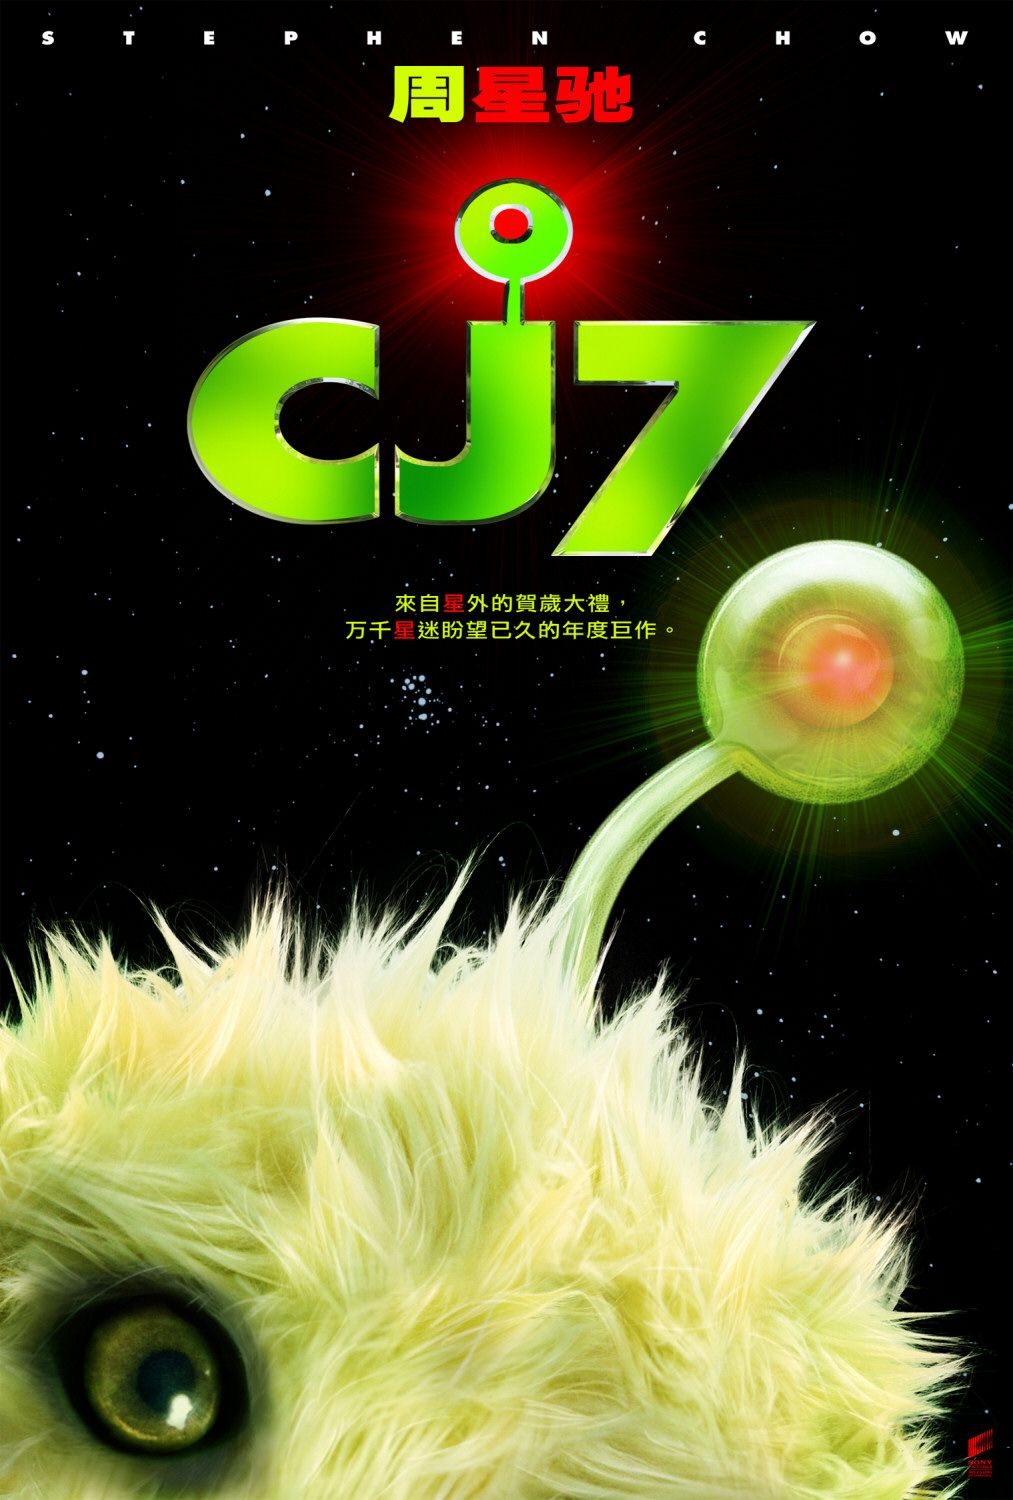 Cj7 Full Movie Hd Download